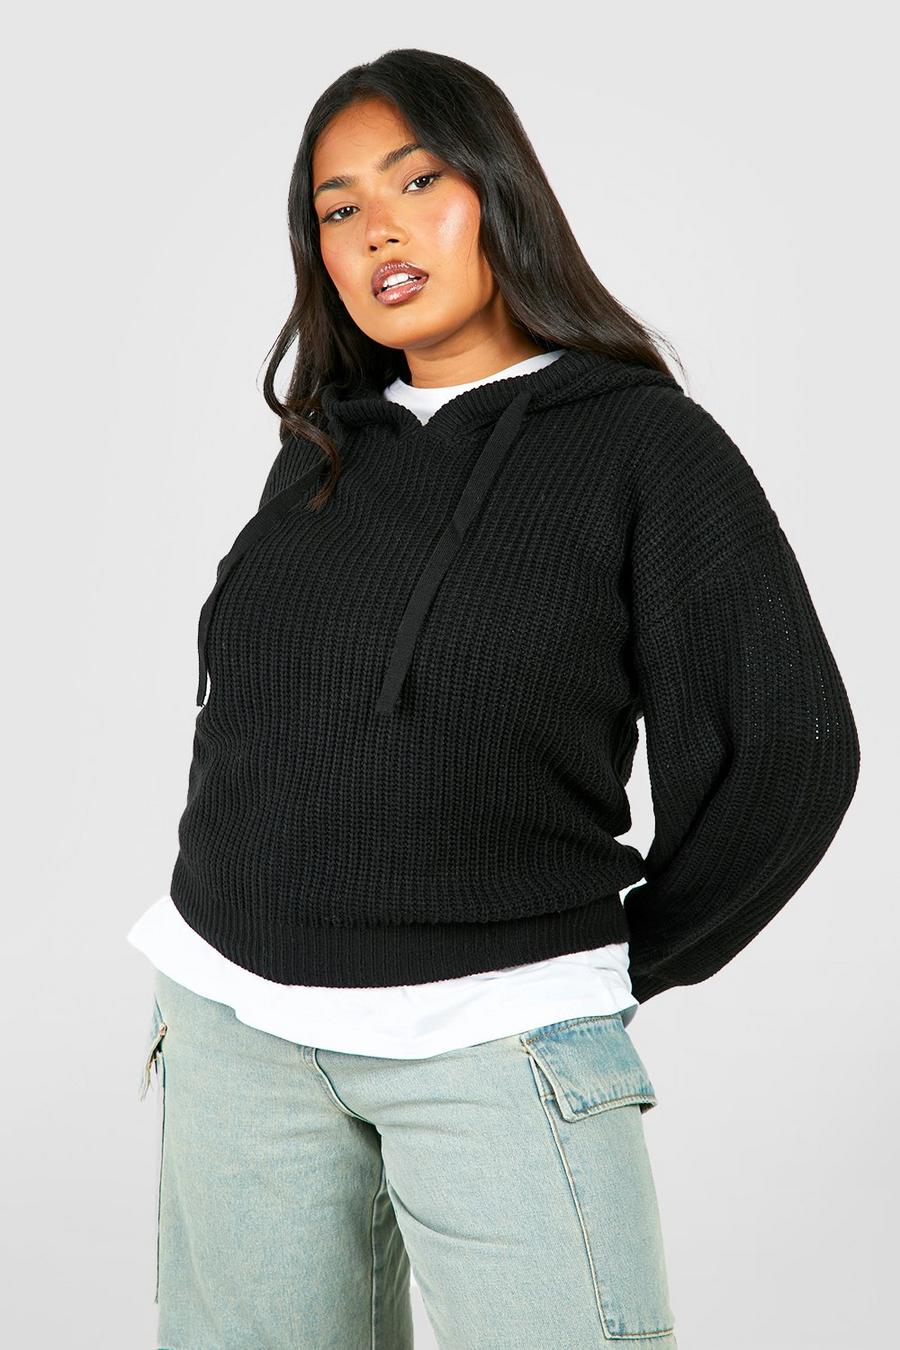 Maglione Plus Size da donna in maglia stile pescatore con cappuccio, Black nero